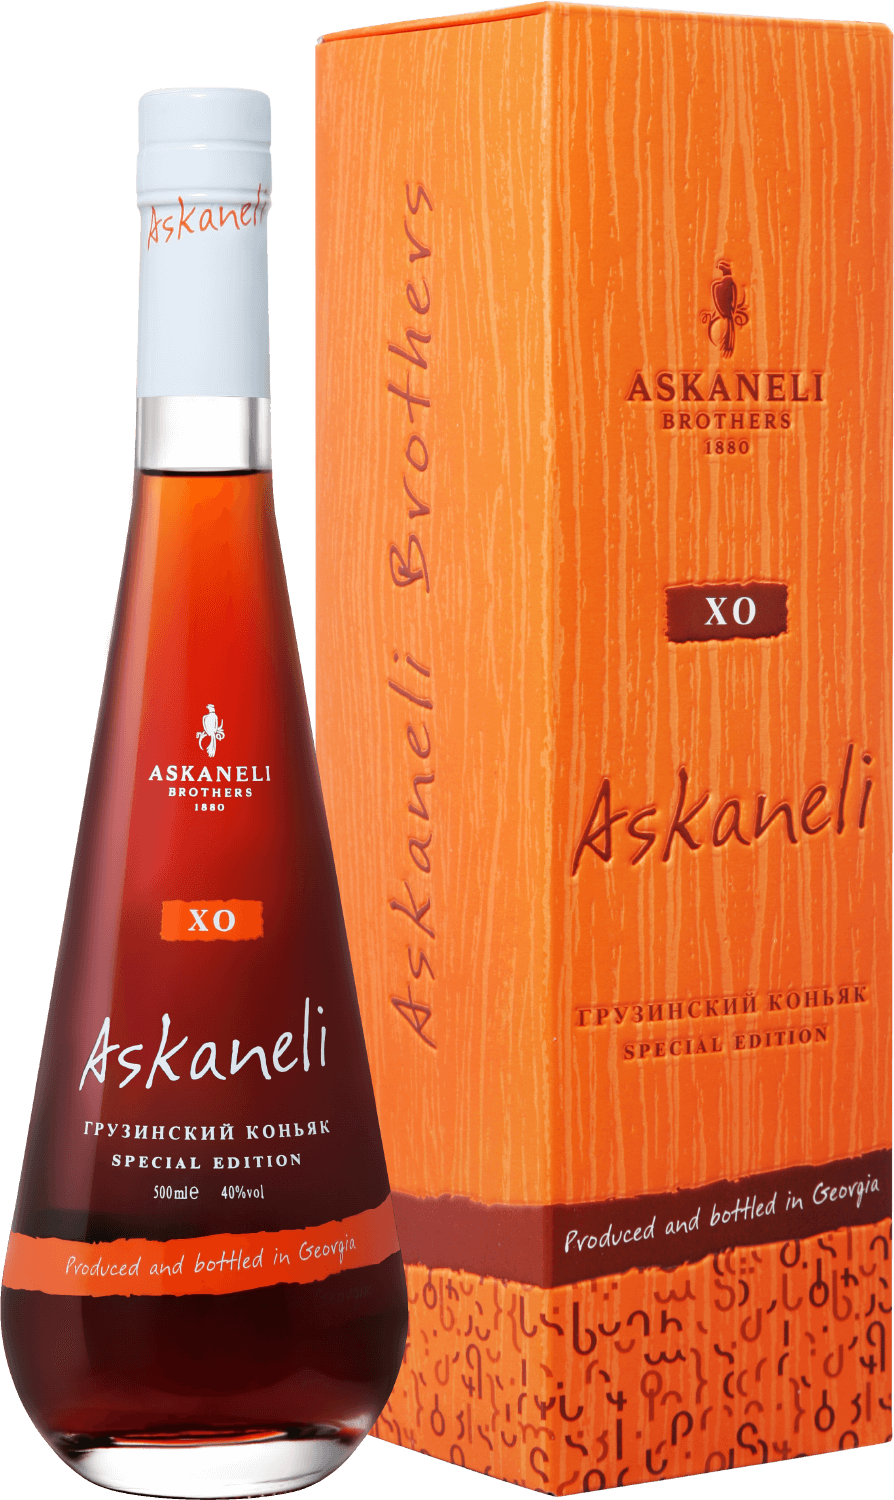 Askaneli XO (gift box)